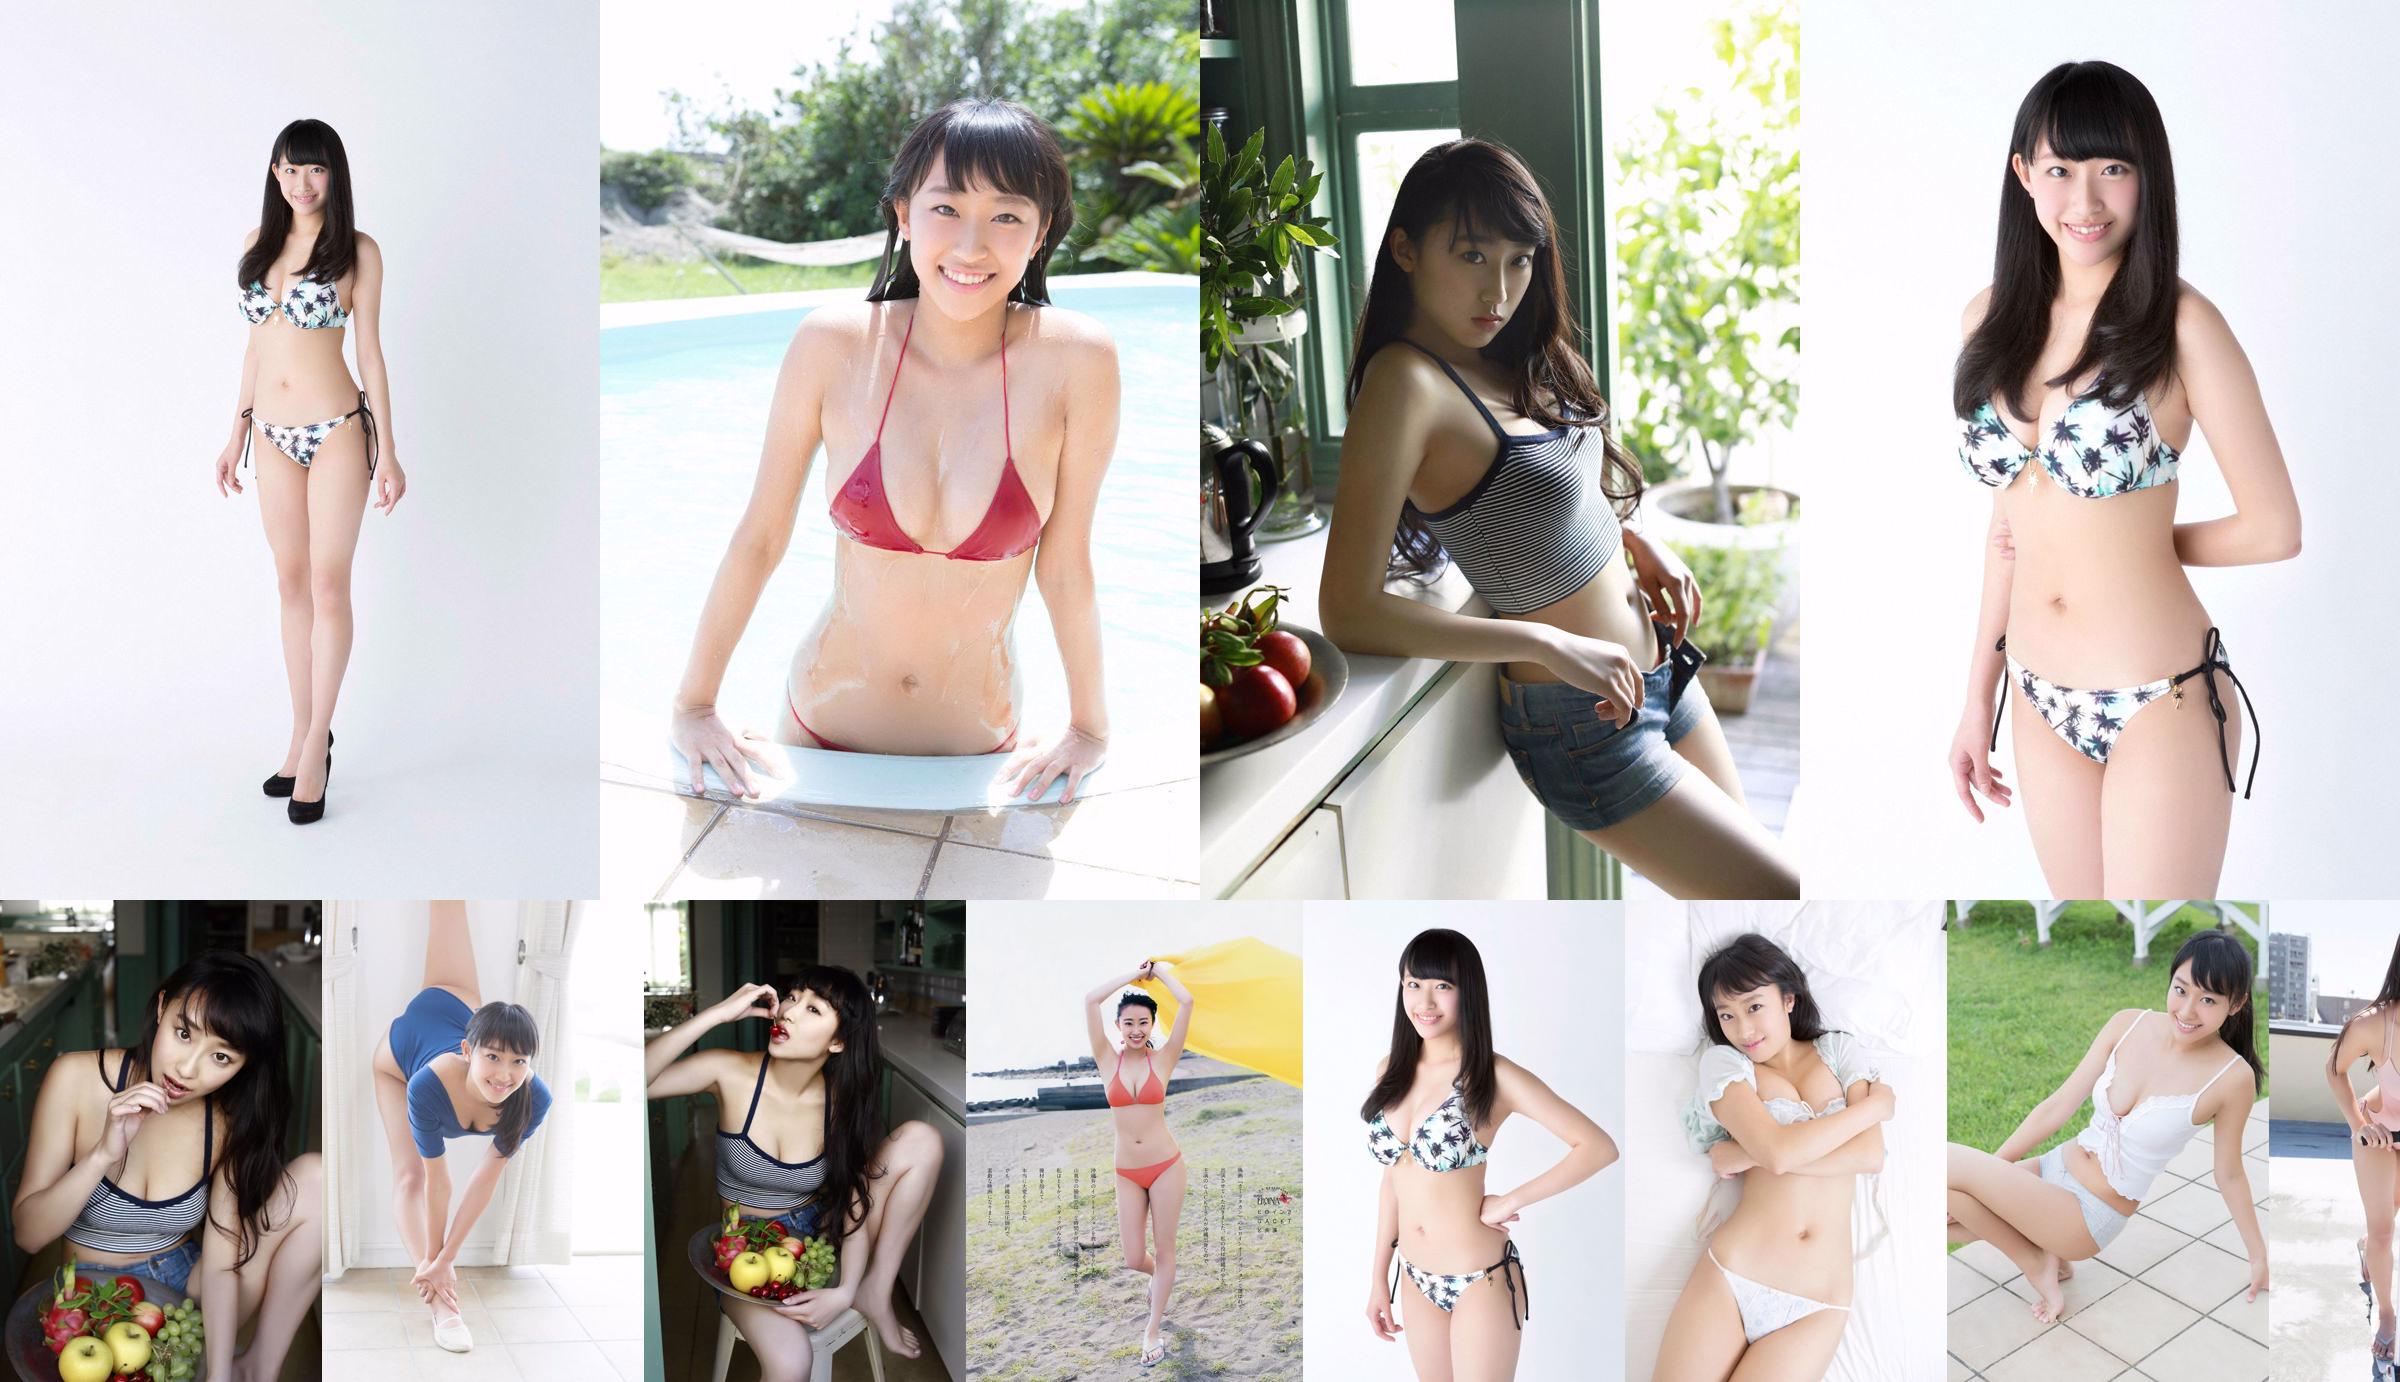 Matsura Sa Yuri Matsura Kaori ミリオンガールズZ [Young Animal] 2014 No.14 Photo Magazine No.addd40 Pagina 2